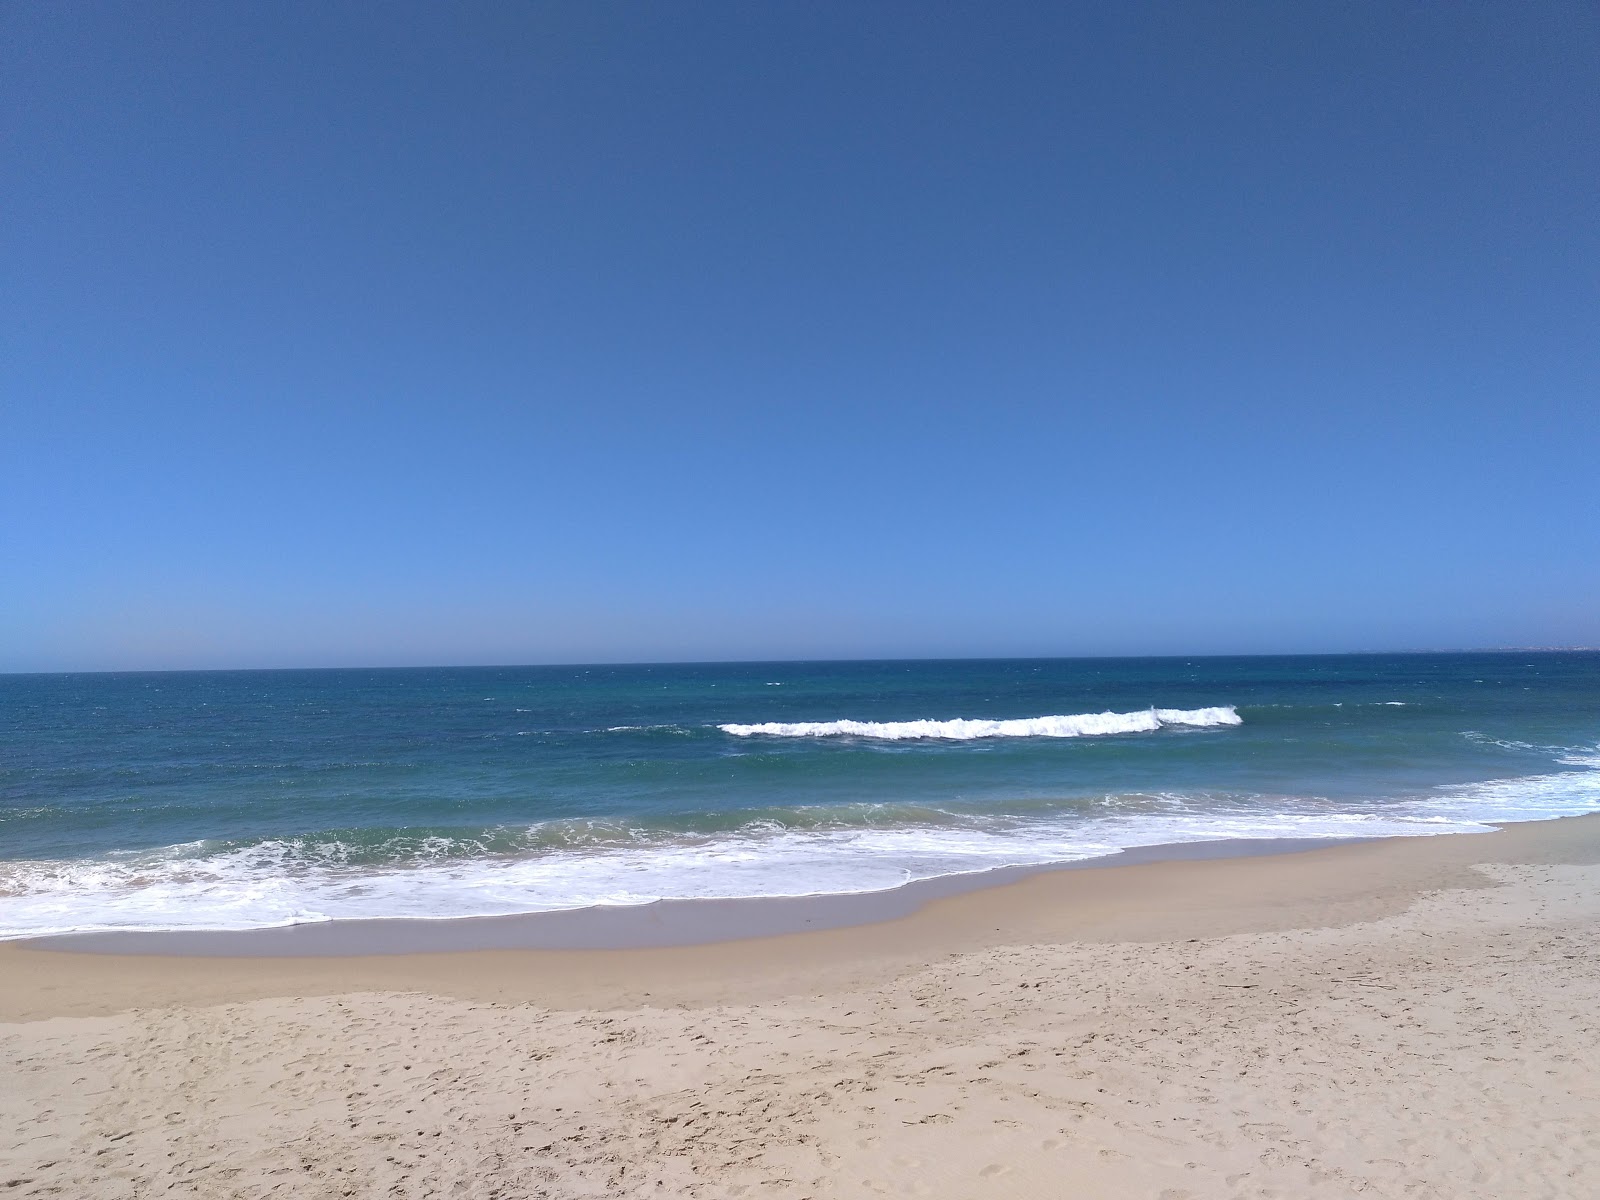 Foto von Praia da Areia Branca - beliebter Ort unter Entspannungskennern